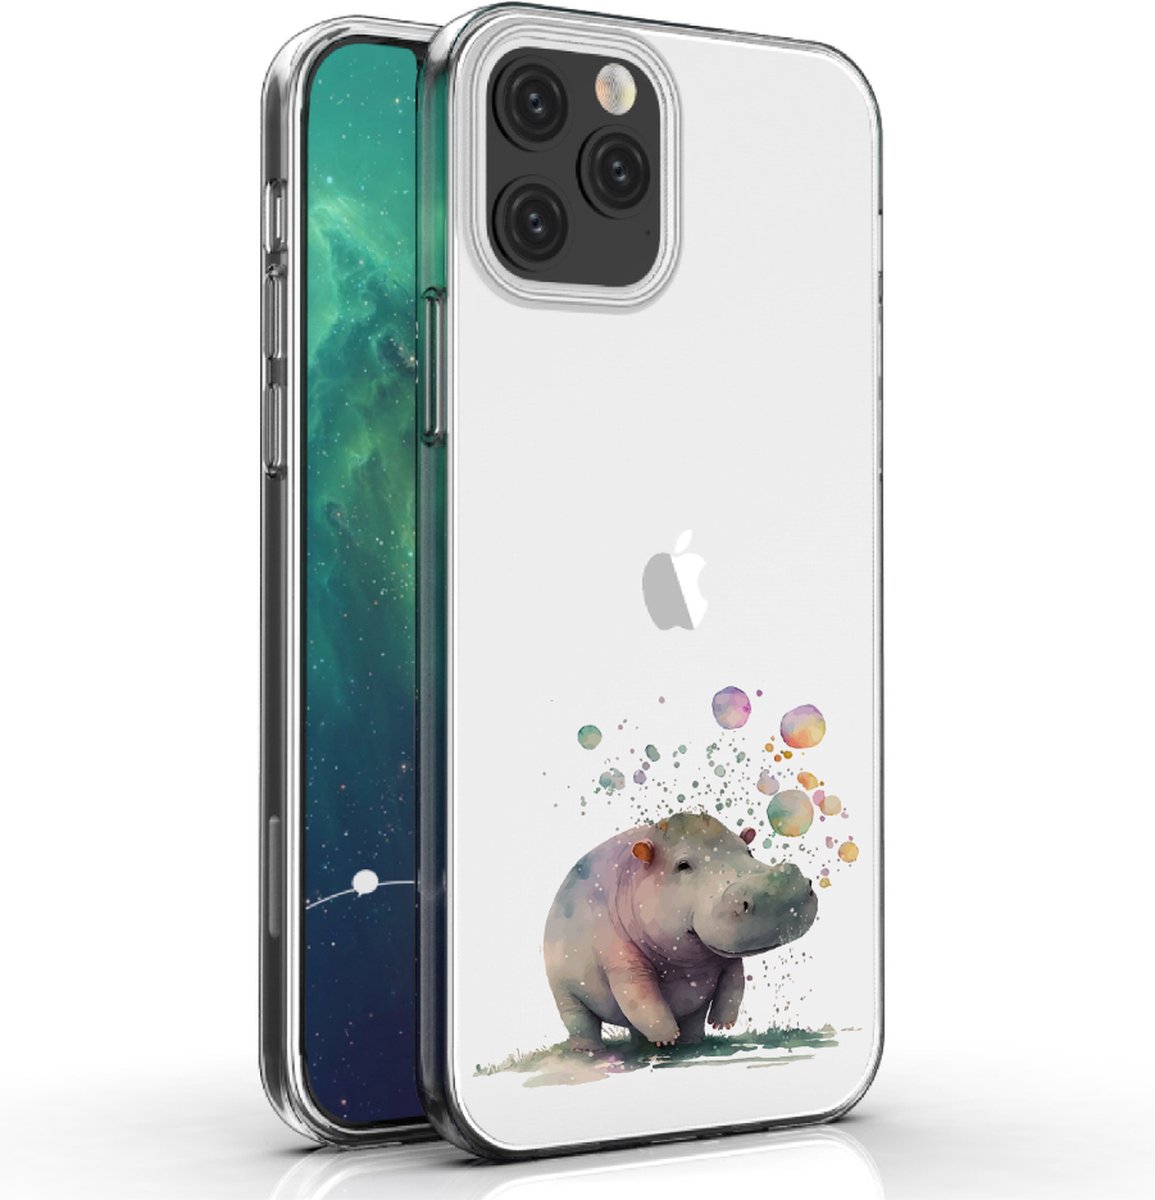 Apple Iphone 12 Pro Max telefoonhoesje transparant siliconen hoesje - Nijlpaard